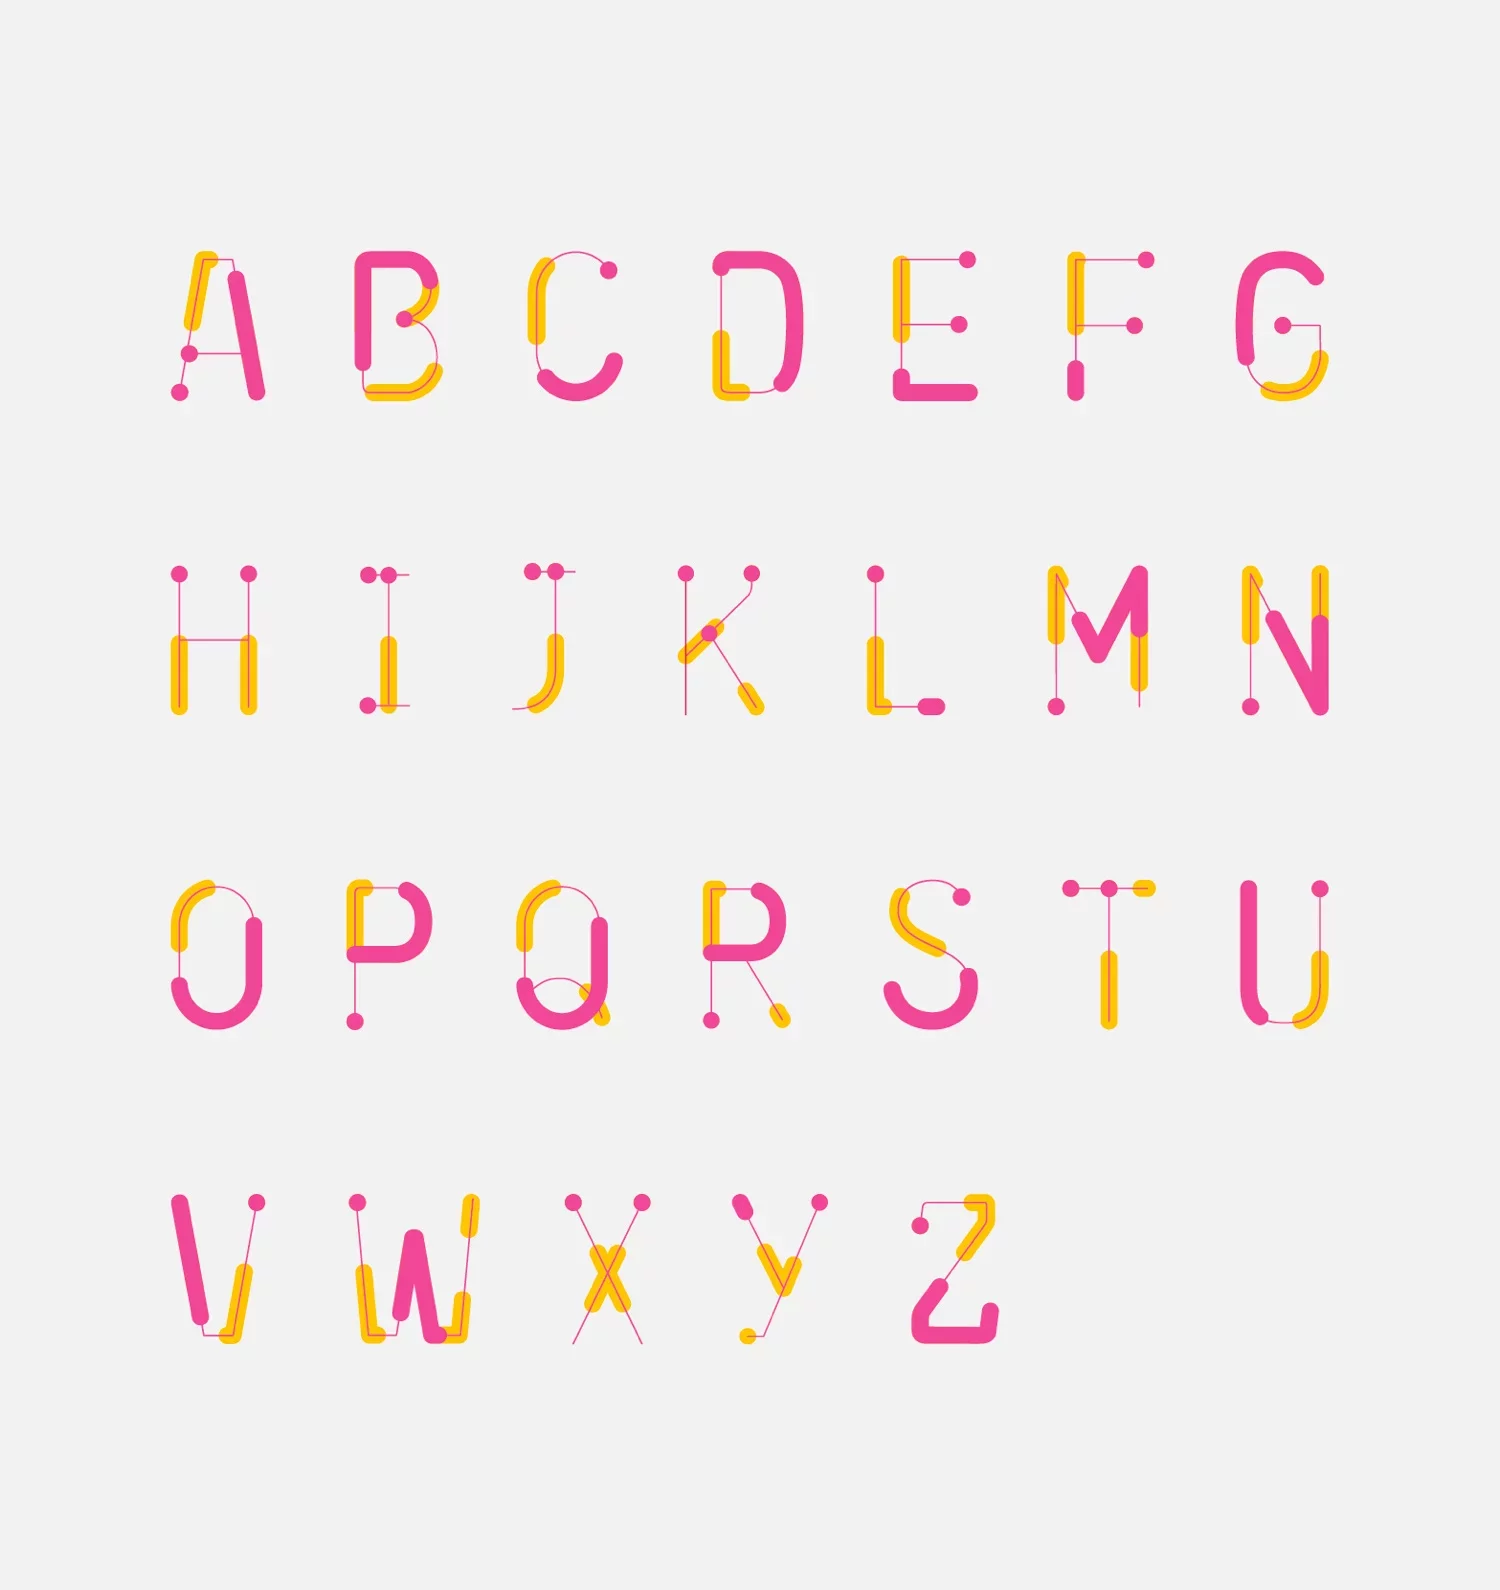 Vue d'ensemble de la typographie Fab Lab utilisée dans le logotype